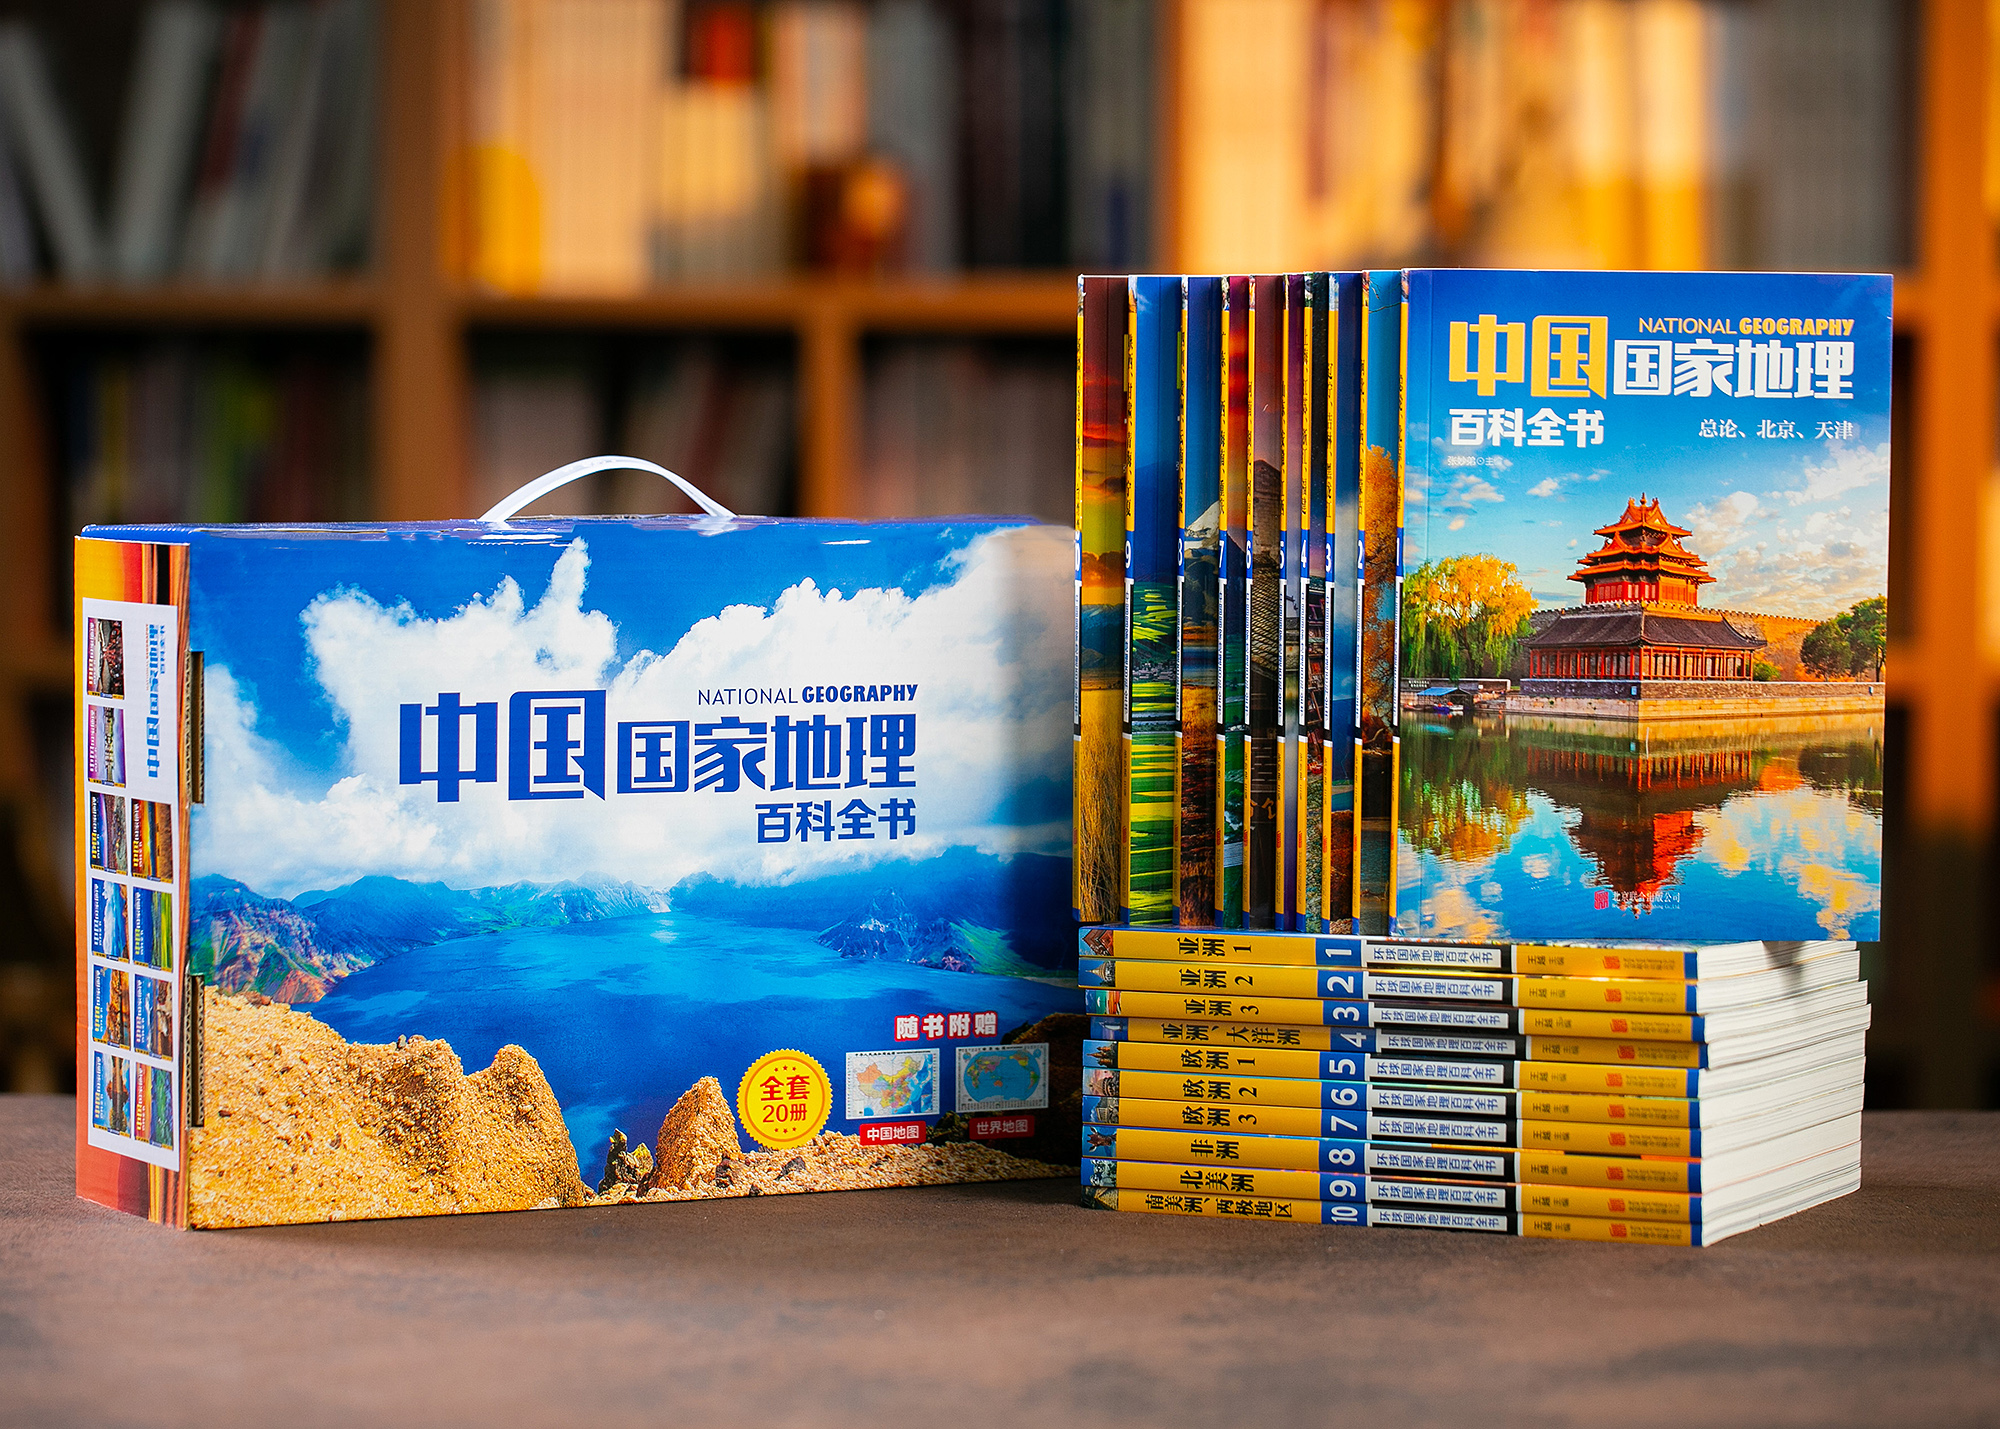 国家地理百科全书（中国+环球全20本）| 中小学生推荐书目，激发学科兴趣，畅游世界美景 | 实用性、趣味性、知识性并存 | 随书附赠中国地图+世界地图